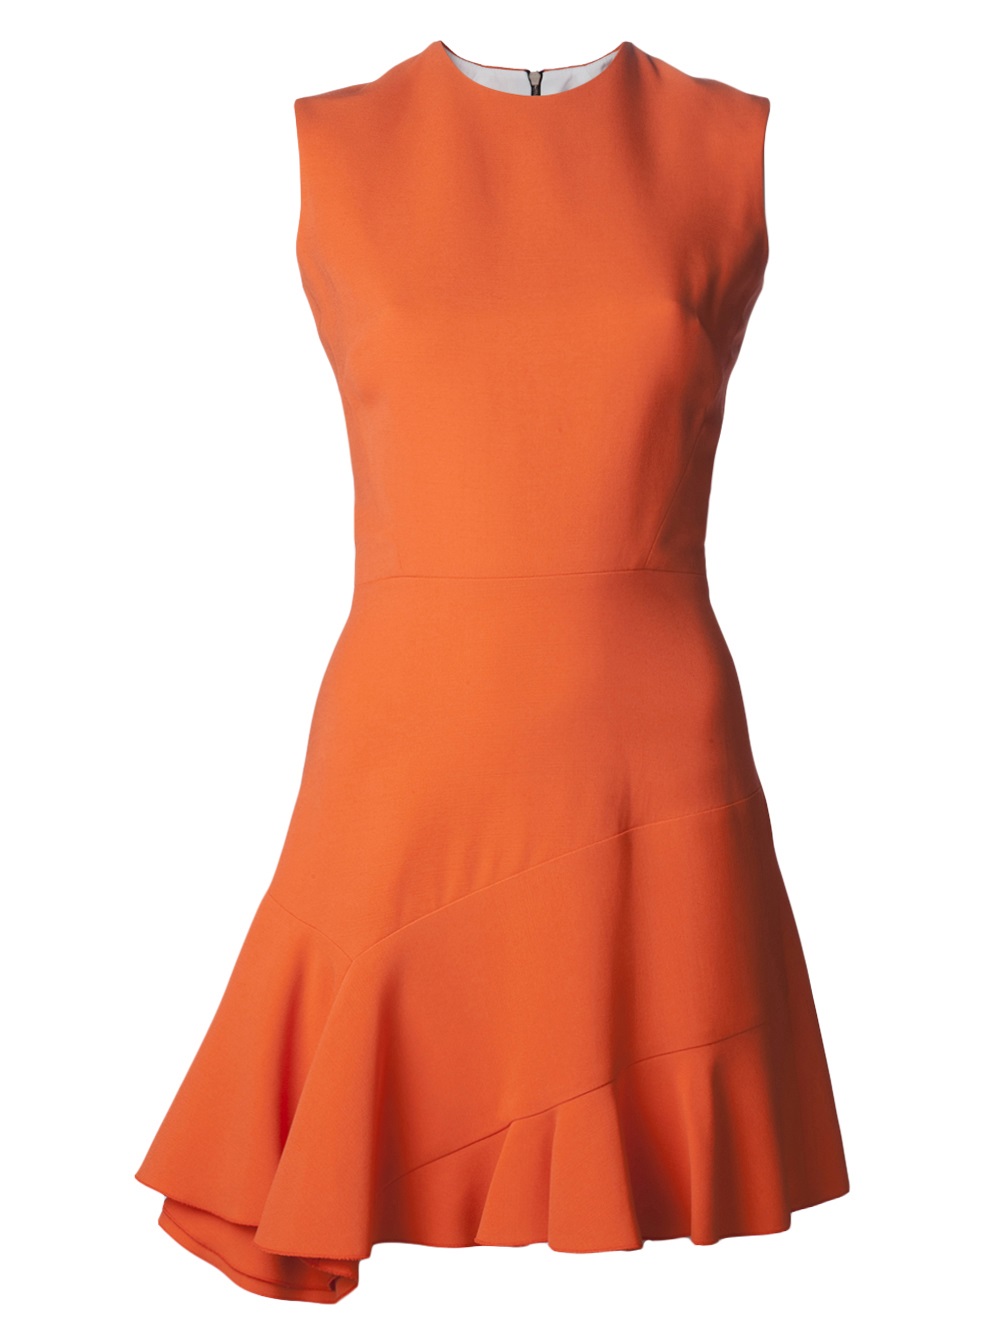 Victoria beckham Flared Dress in Orange | Lyst